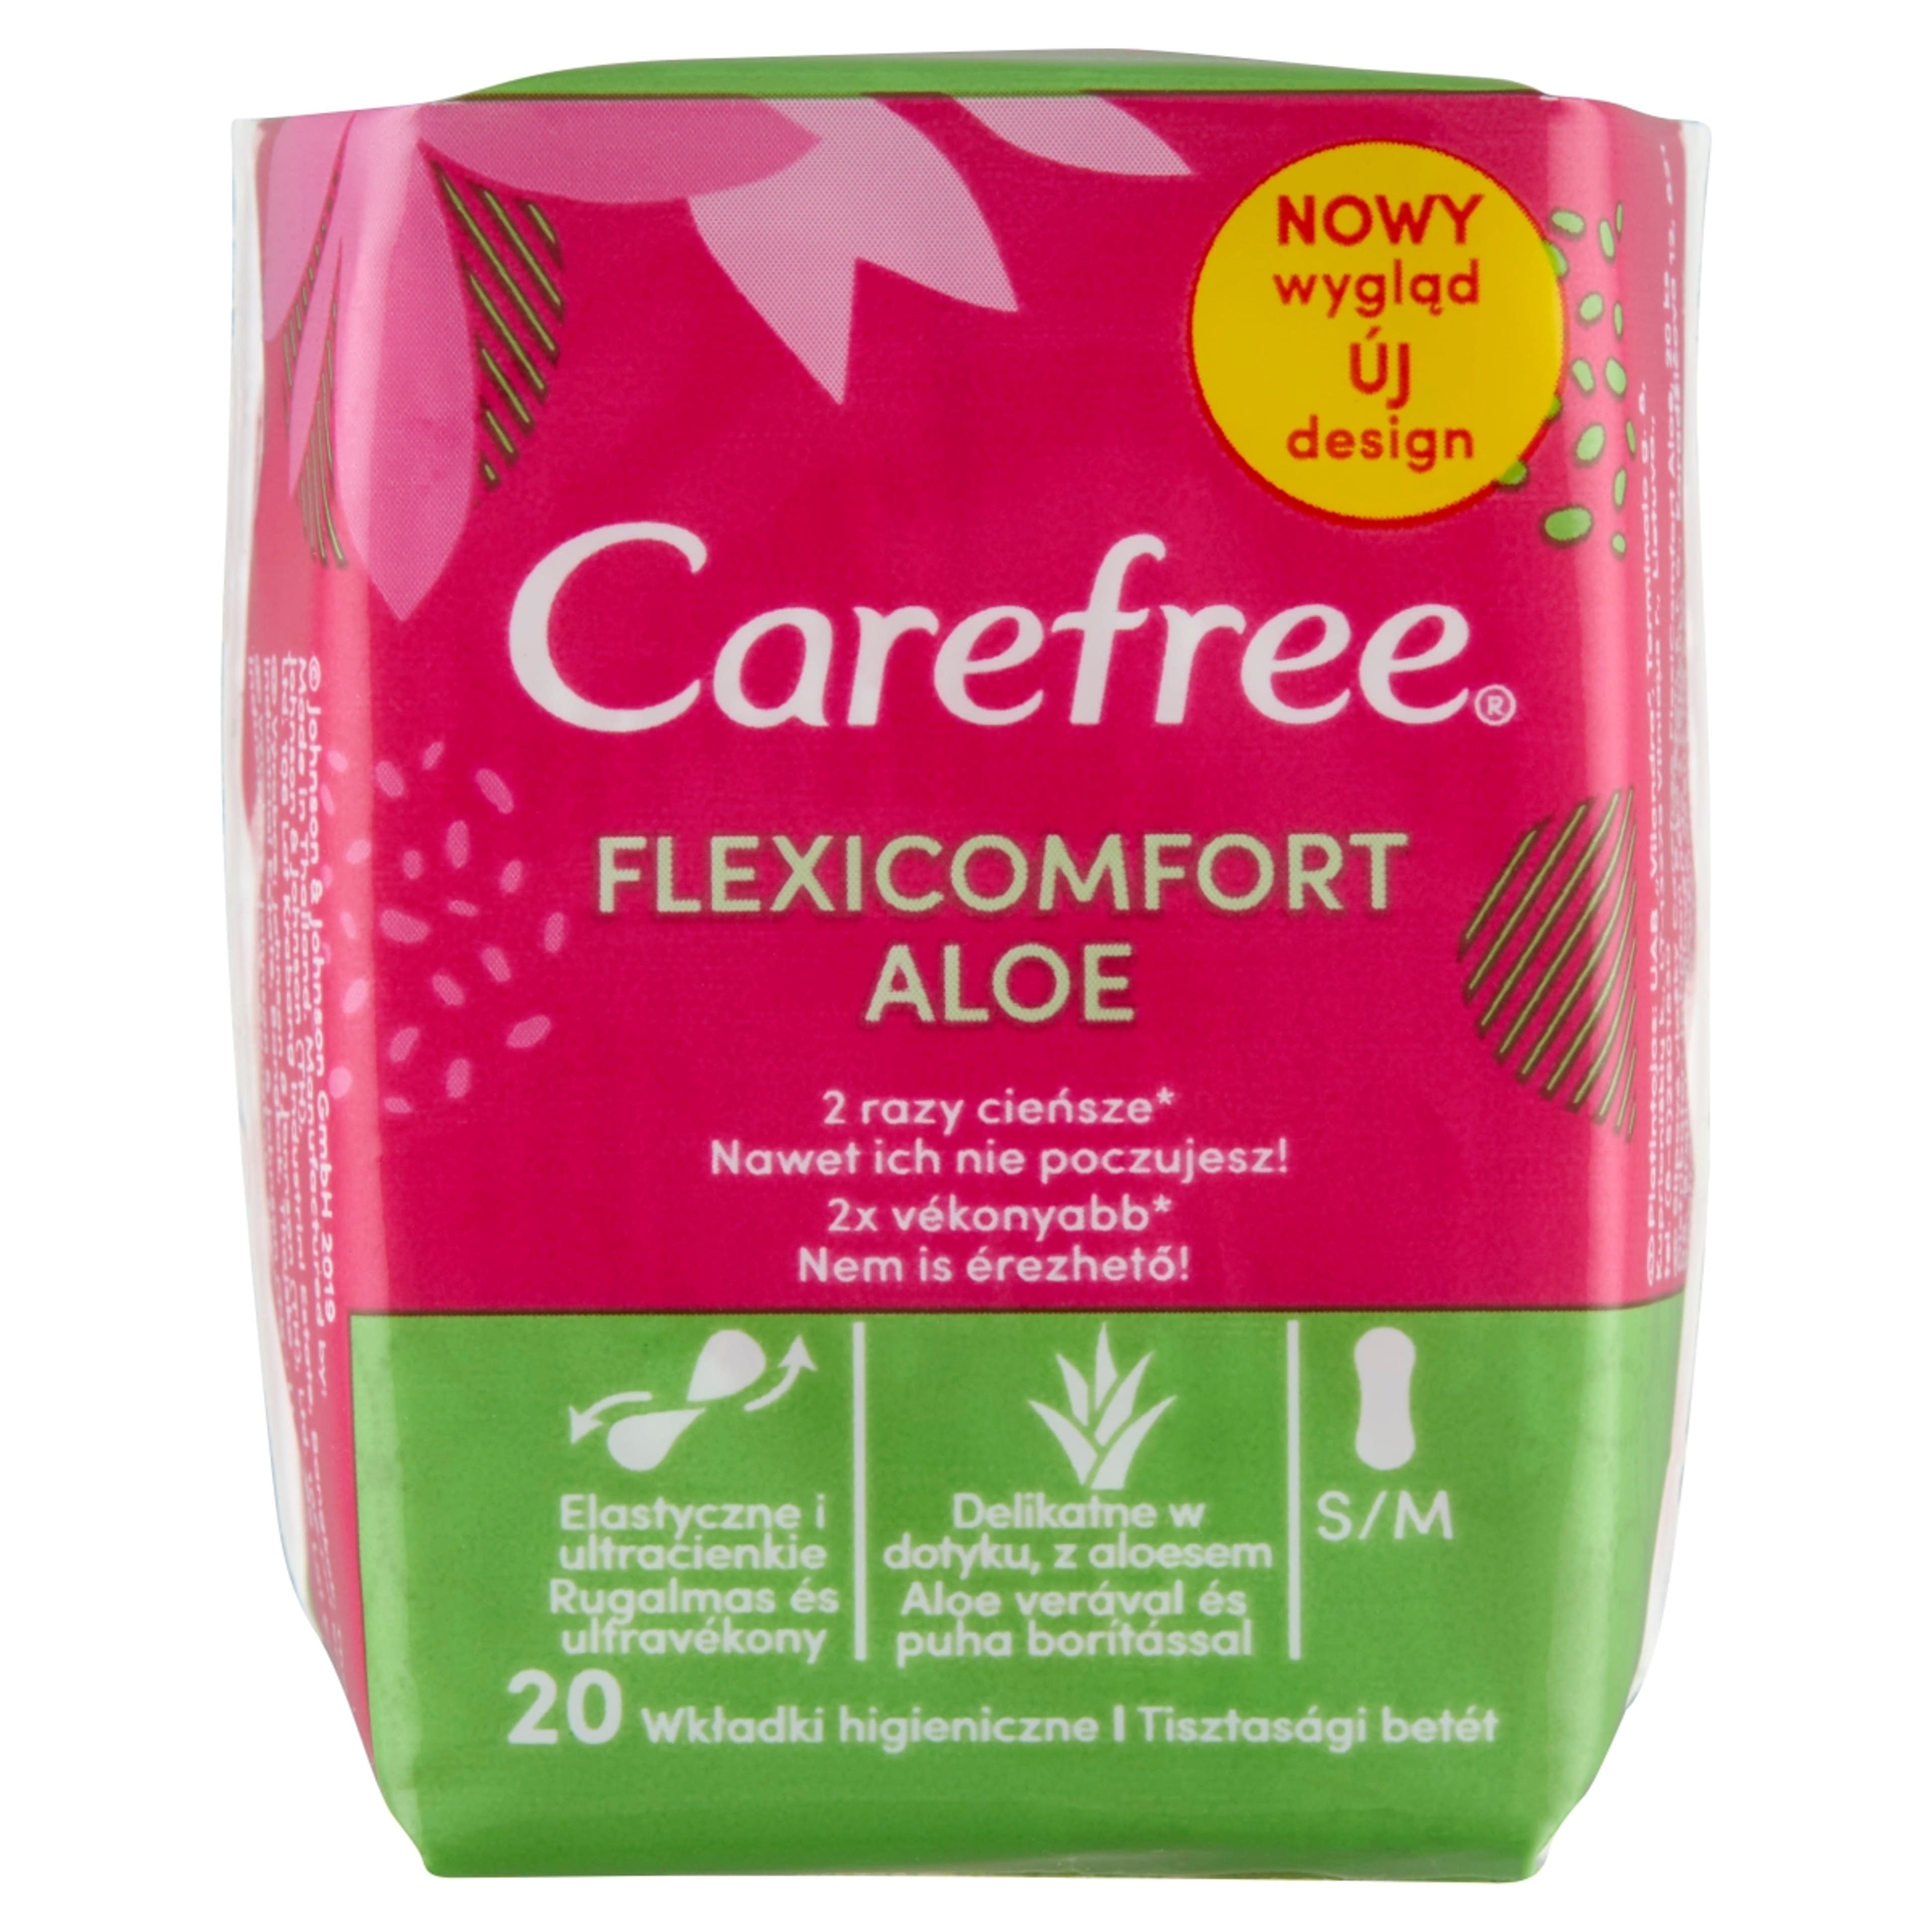 Carefree FlexiComfort Aloe tisztasági betét - 20 db